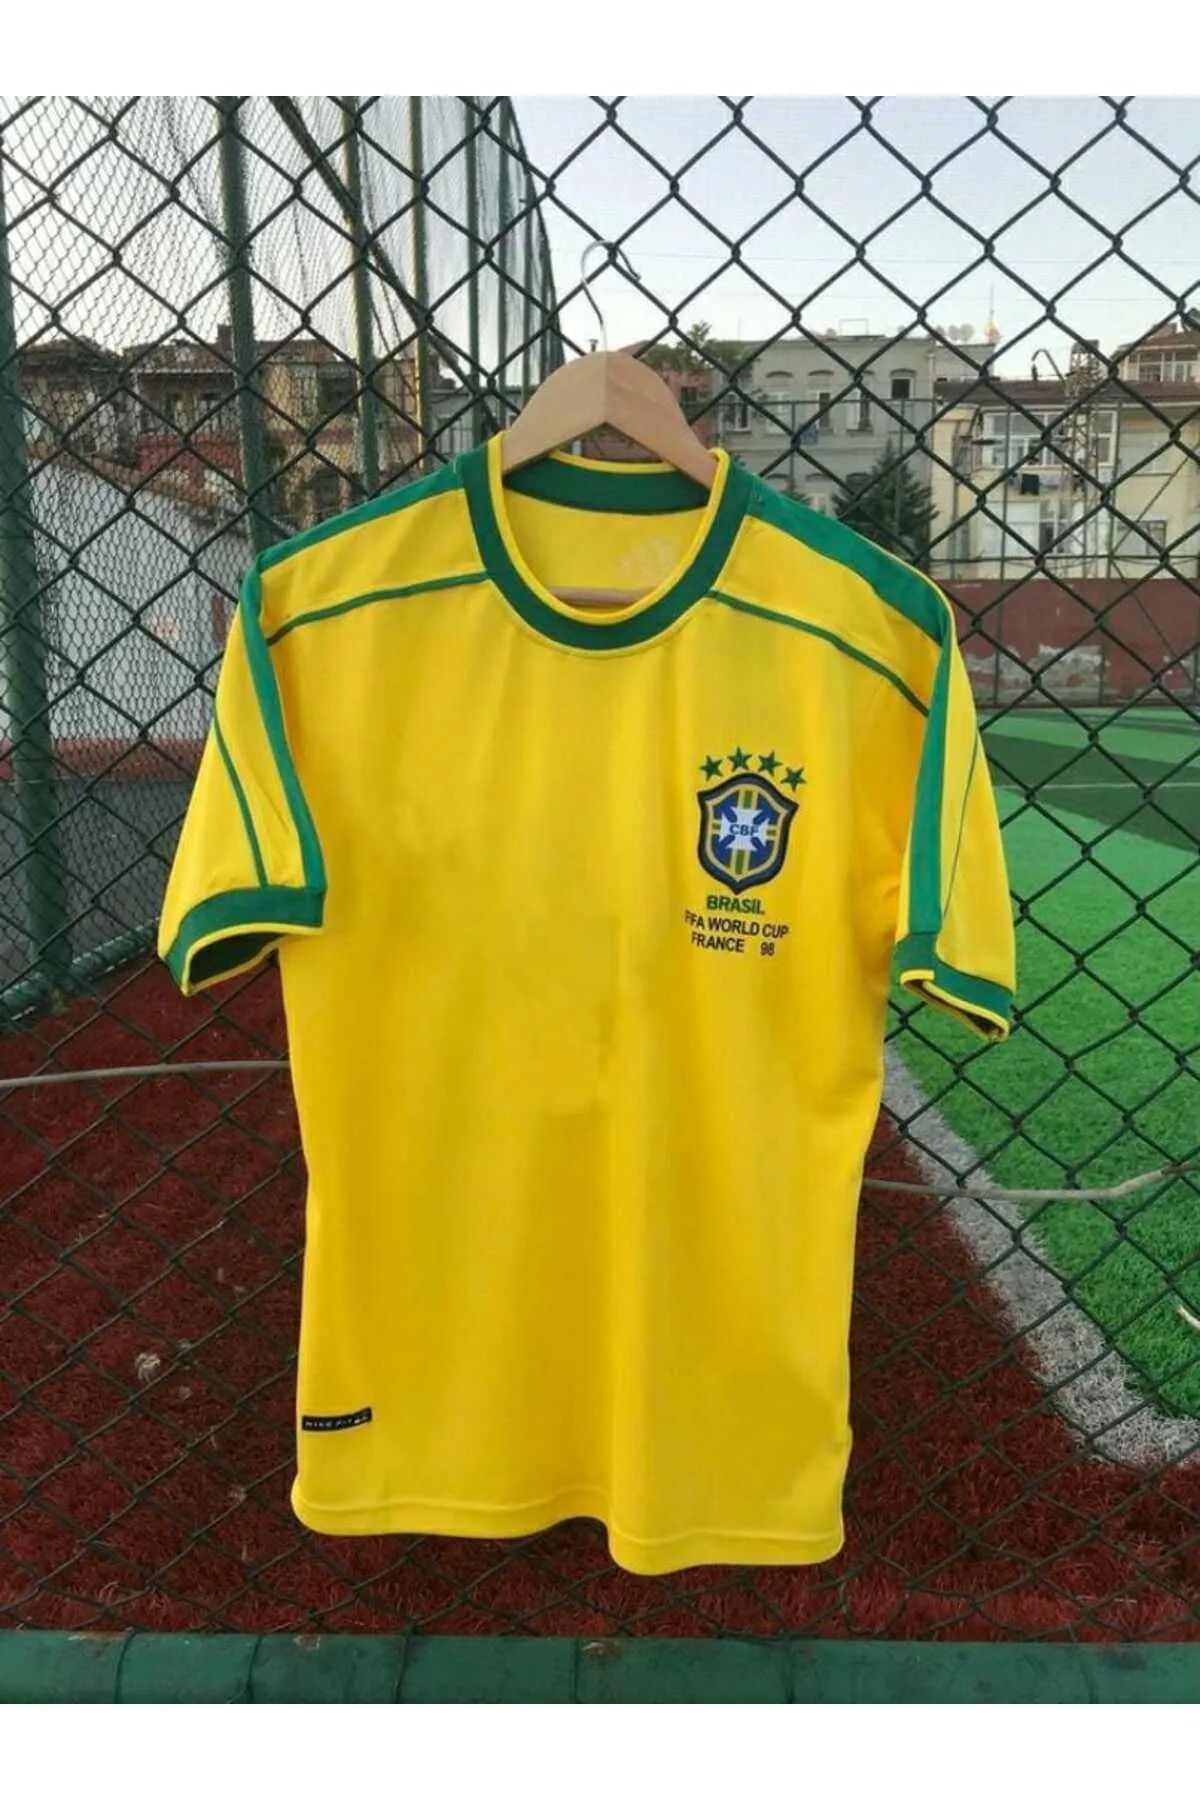 AJAX STAR Brezilya Milli Takımı 98 Dünya Kupası Neymar Jr Nostalji Forması